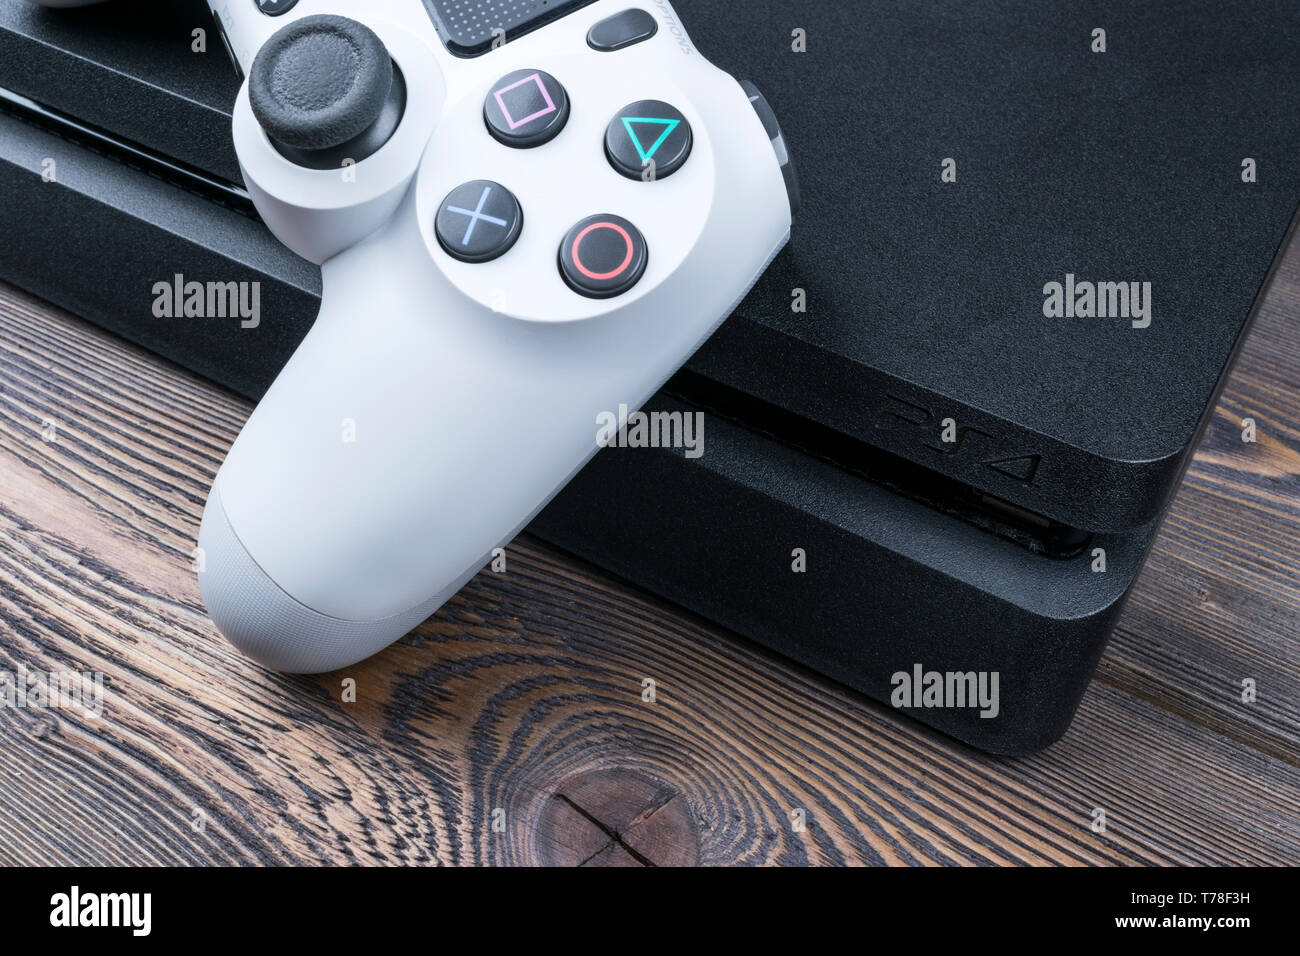 Kaliningrad, Russie, le 24 septembre 2017 : Sony PlayStation 4 Slim révision 1 To et dualshock contrôleur de jeu. Console de jeu avec une manette. Accueil v Banque D'Images